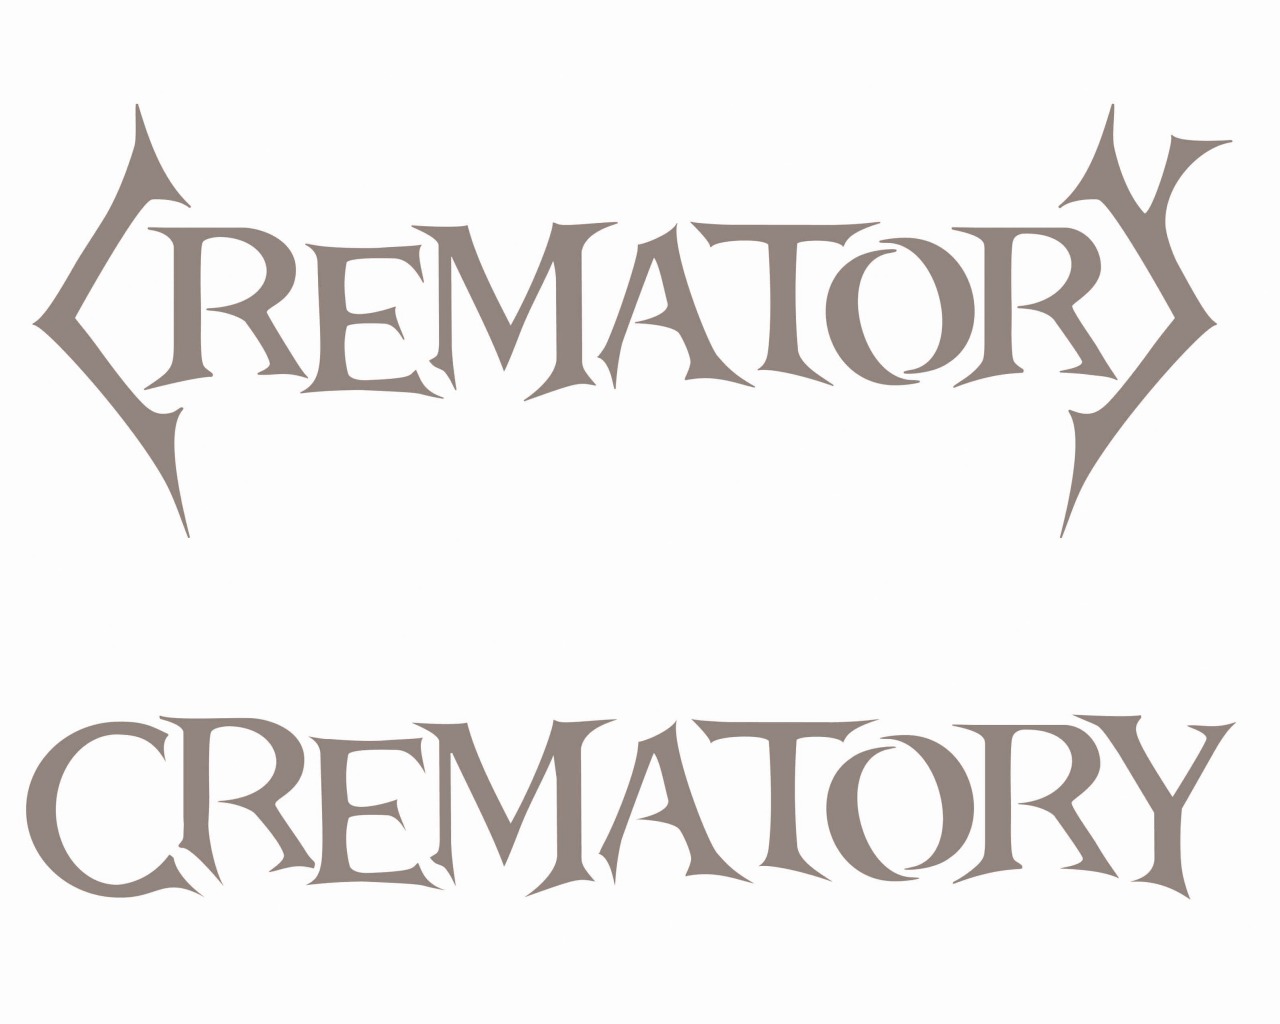 Crematory_10_1280x1024.jpg